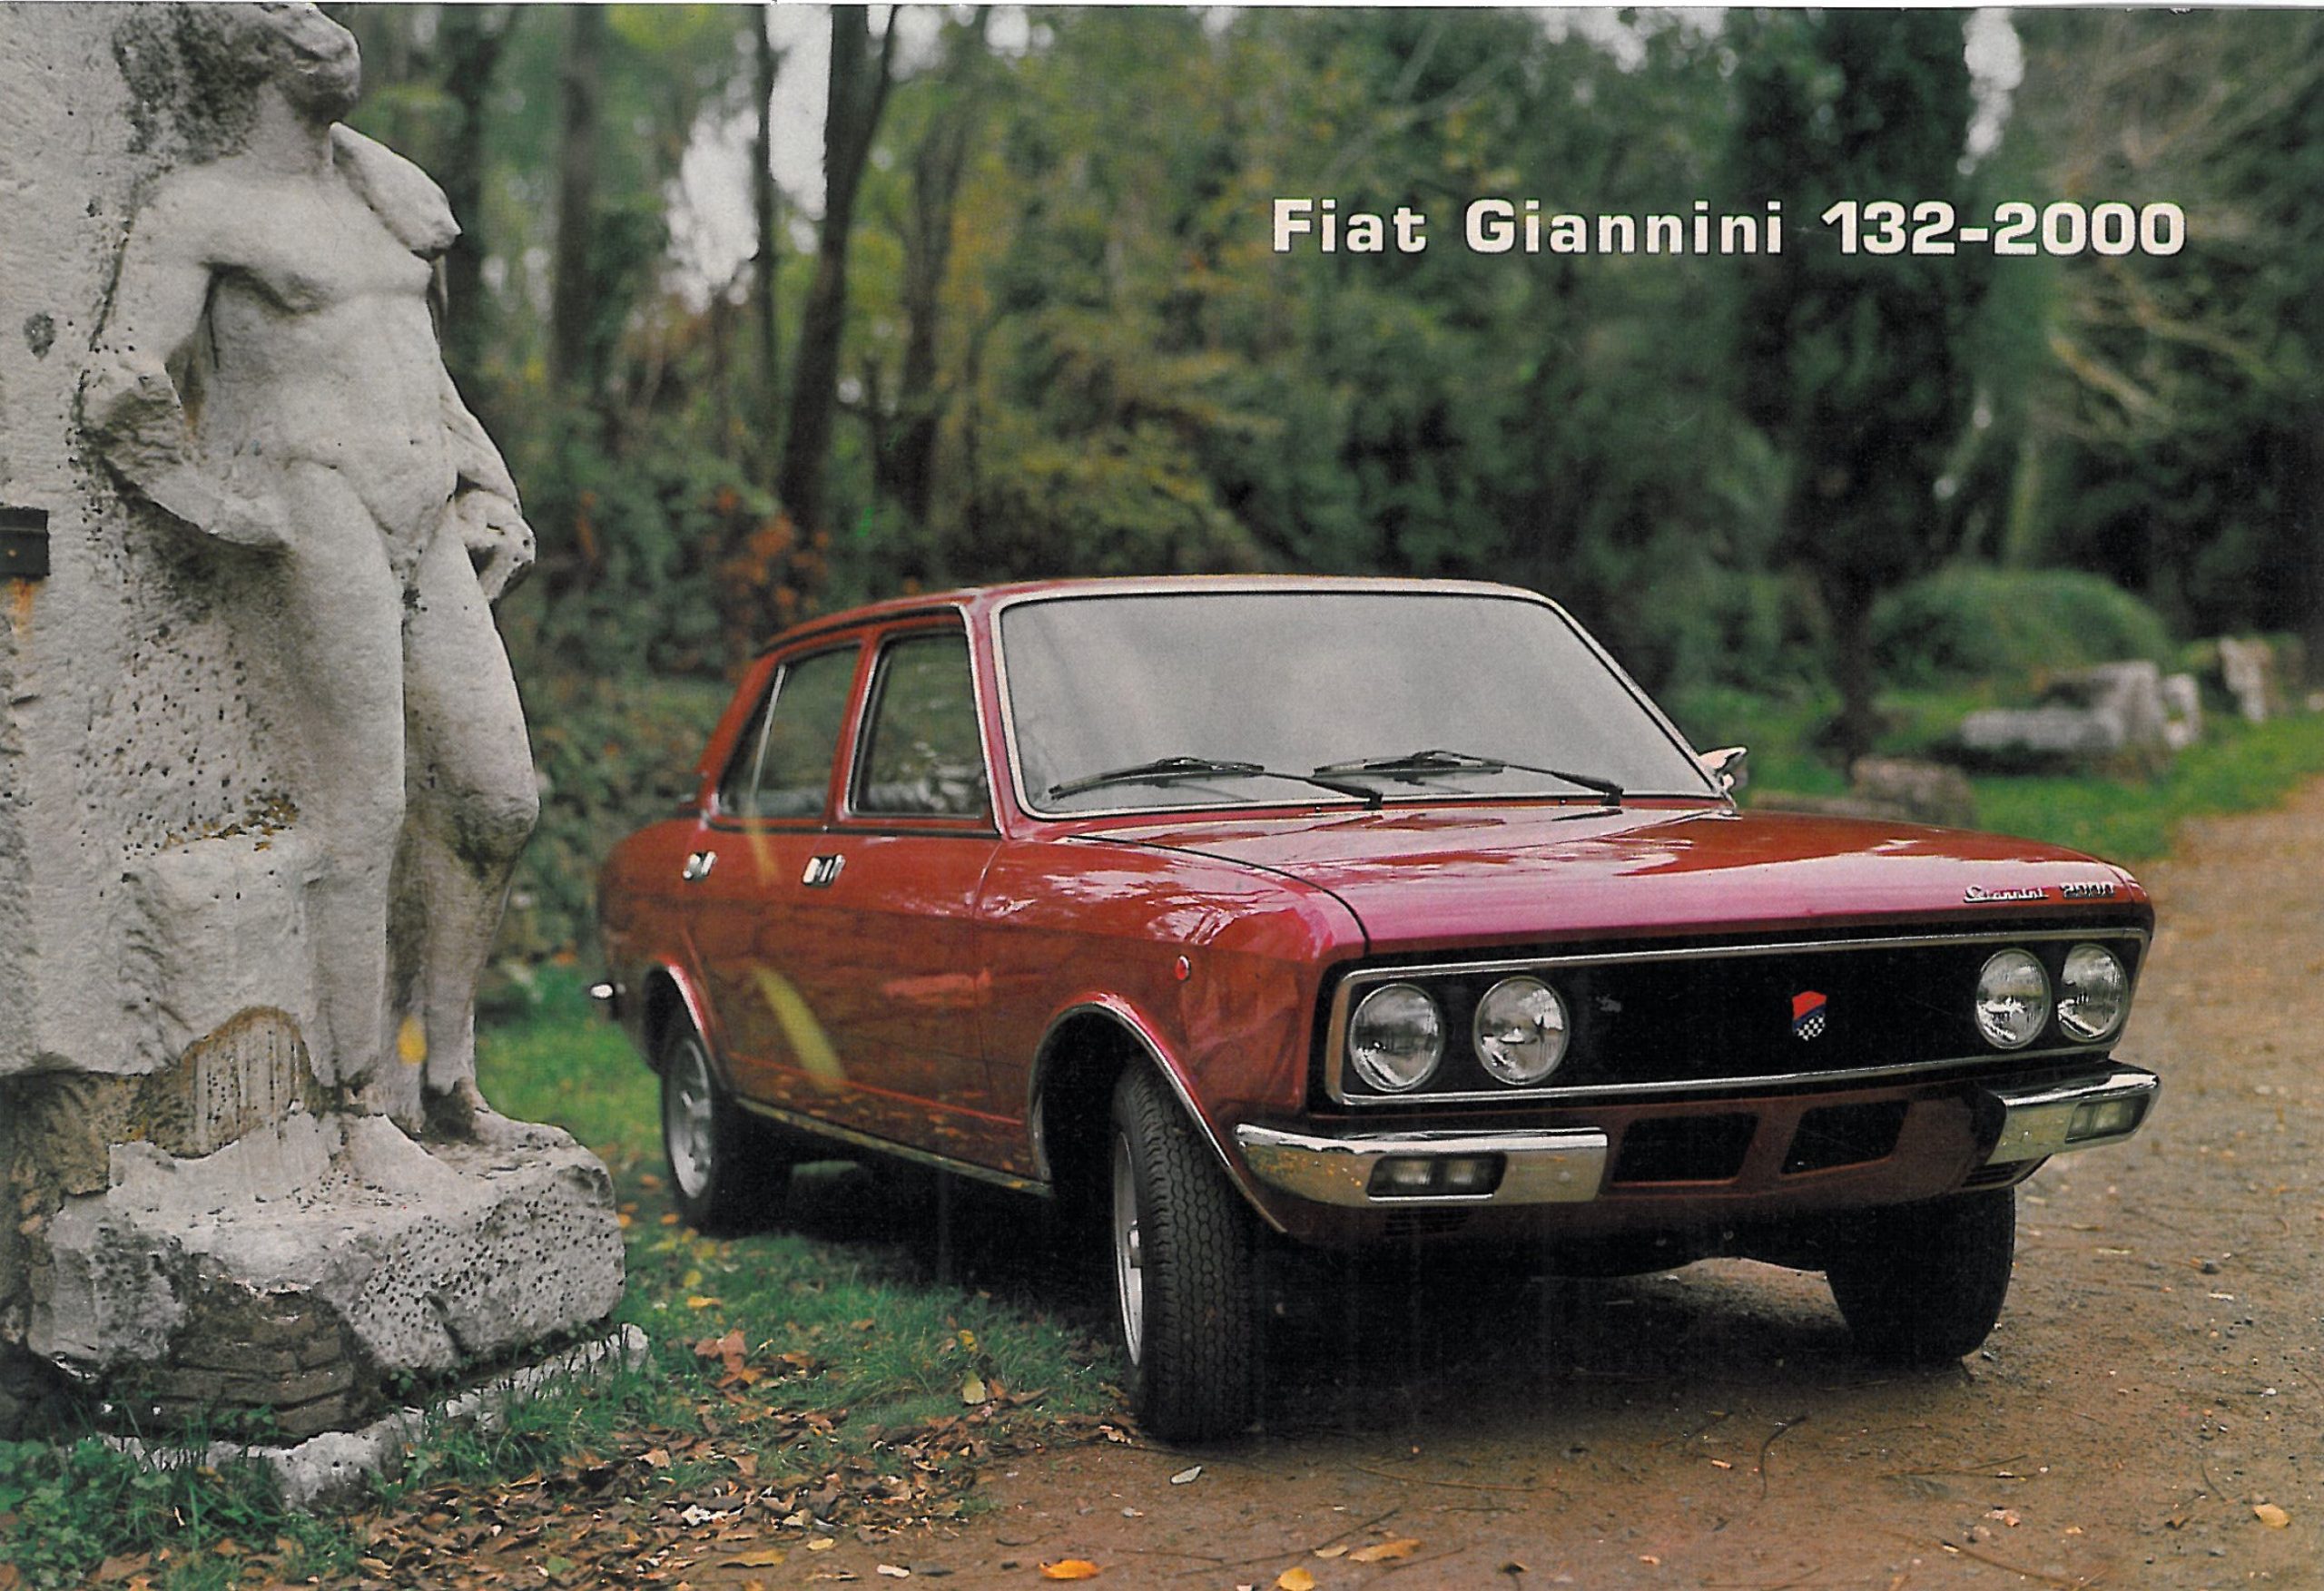 Fiat 132 Giannini 2000